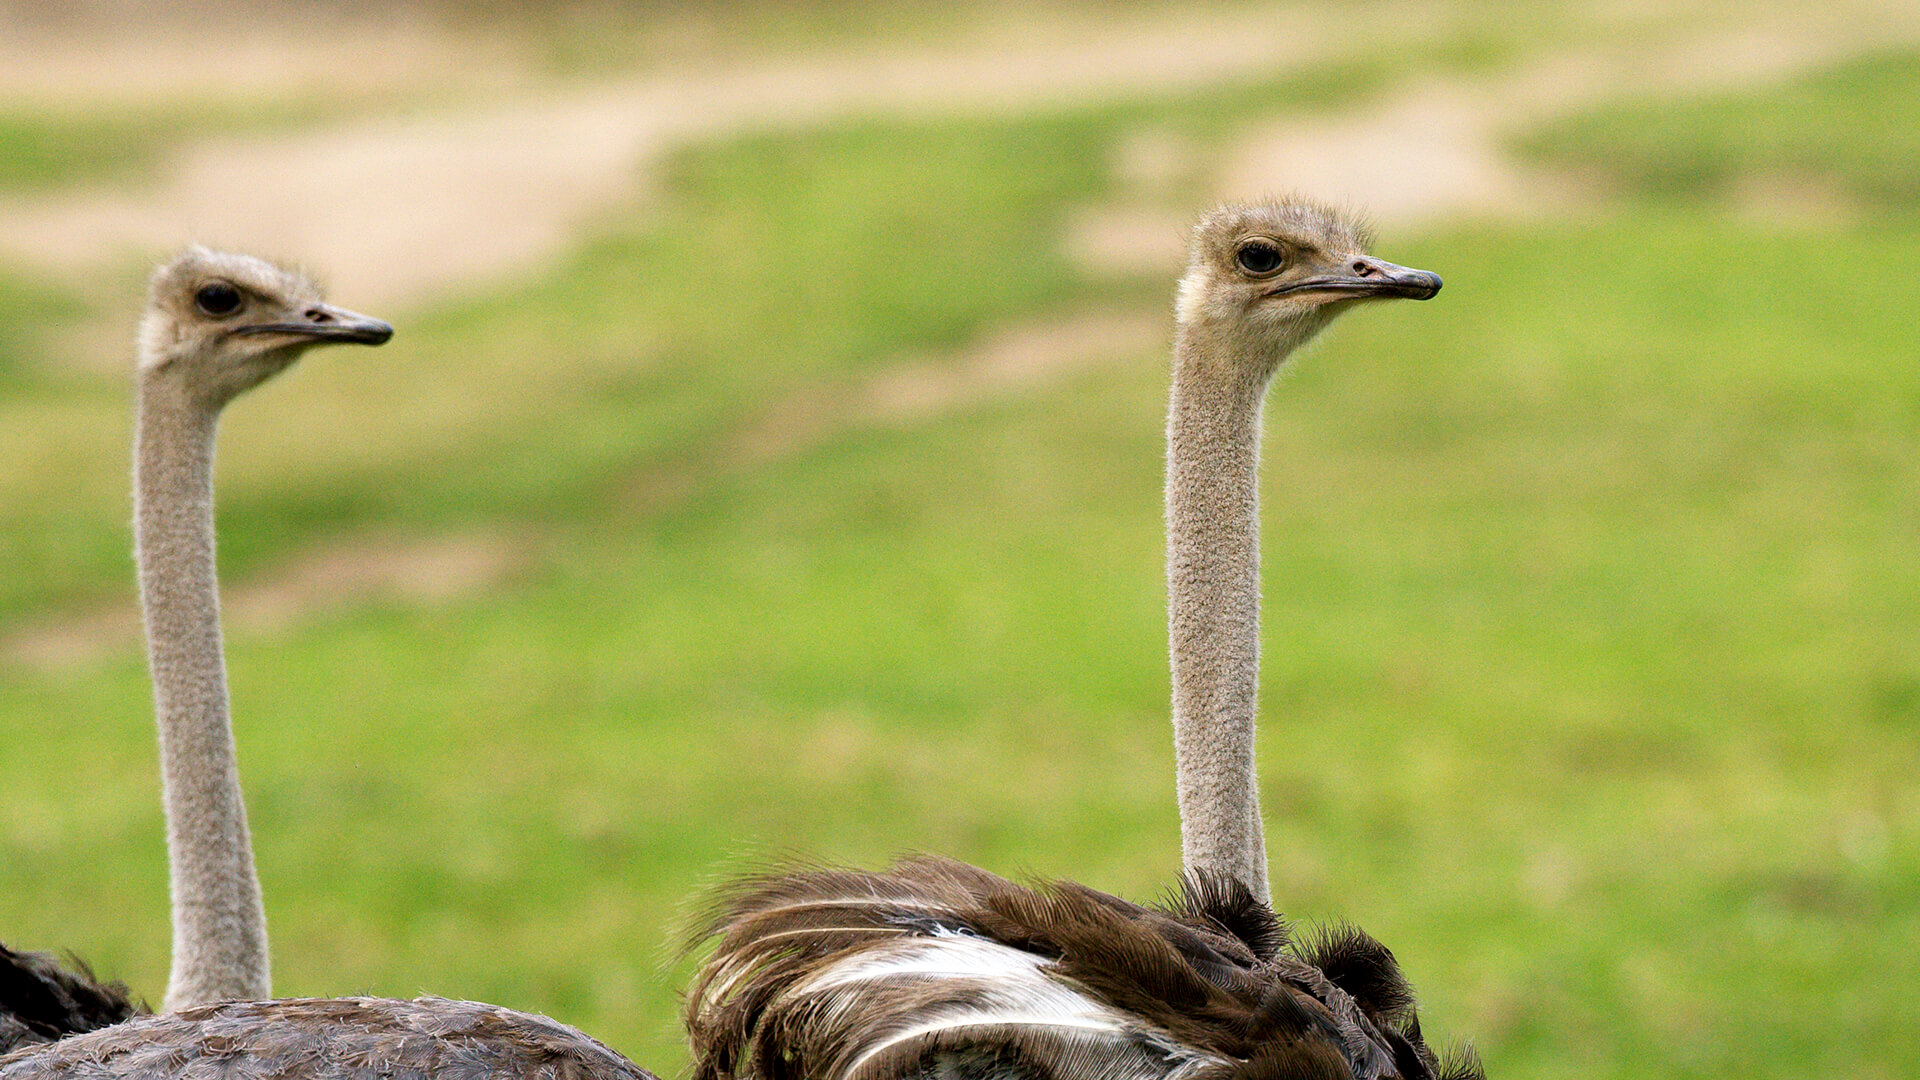 Where do emus live